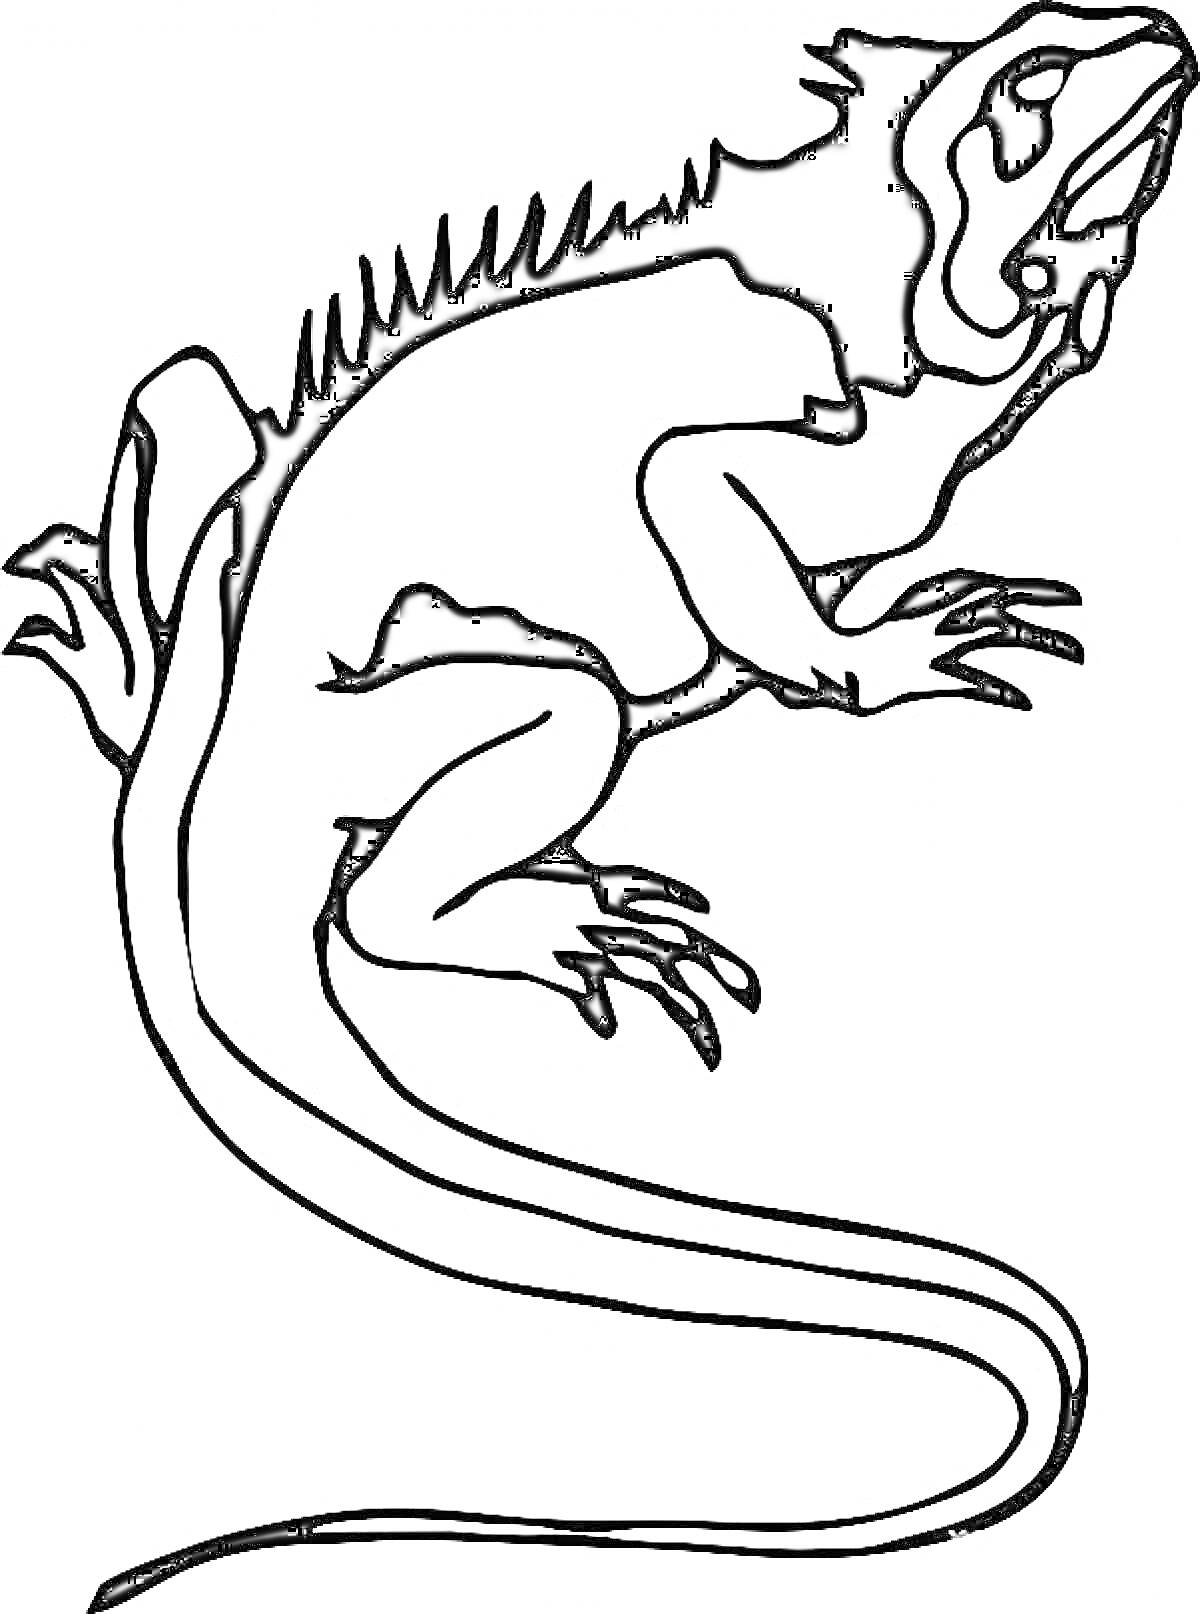 Раскраска Ящерица с длинным хвостом и шипами на спине, рисунок черно-белый контур